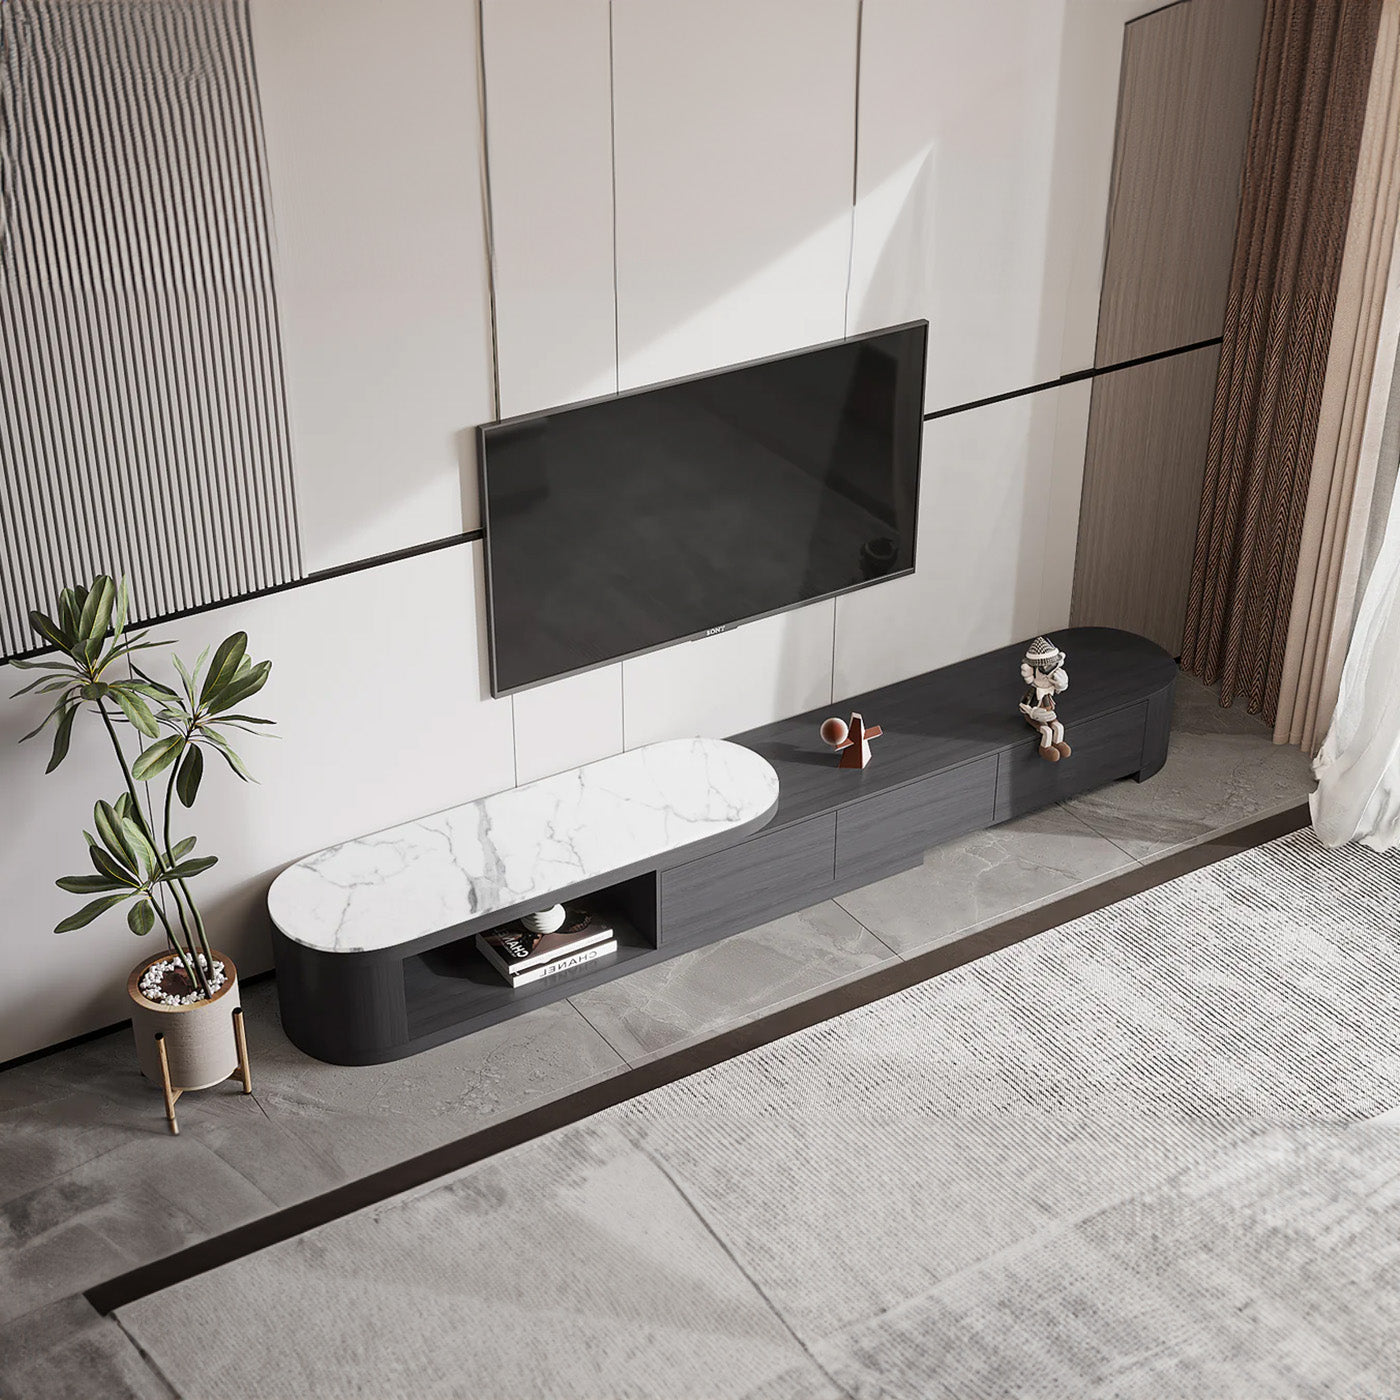 Bellemave 70.8" Black Color Modern Sintered Stone And Ash Wood TV Cabinet